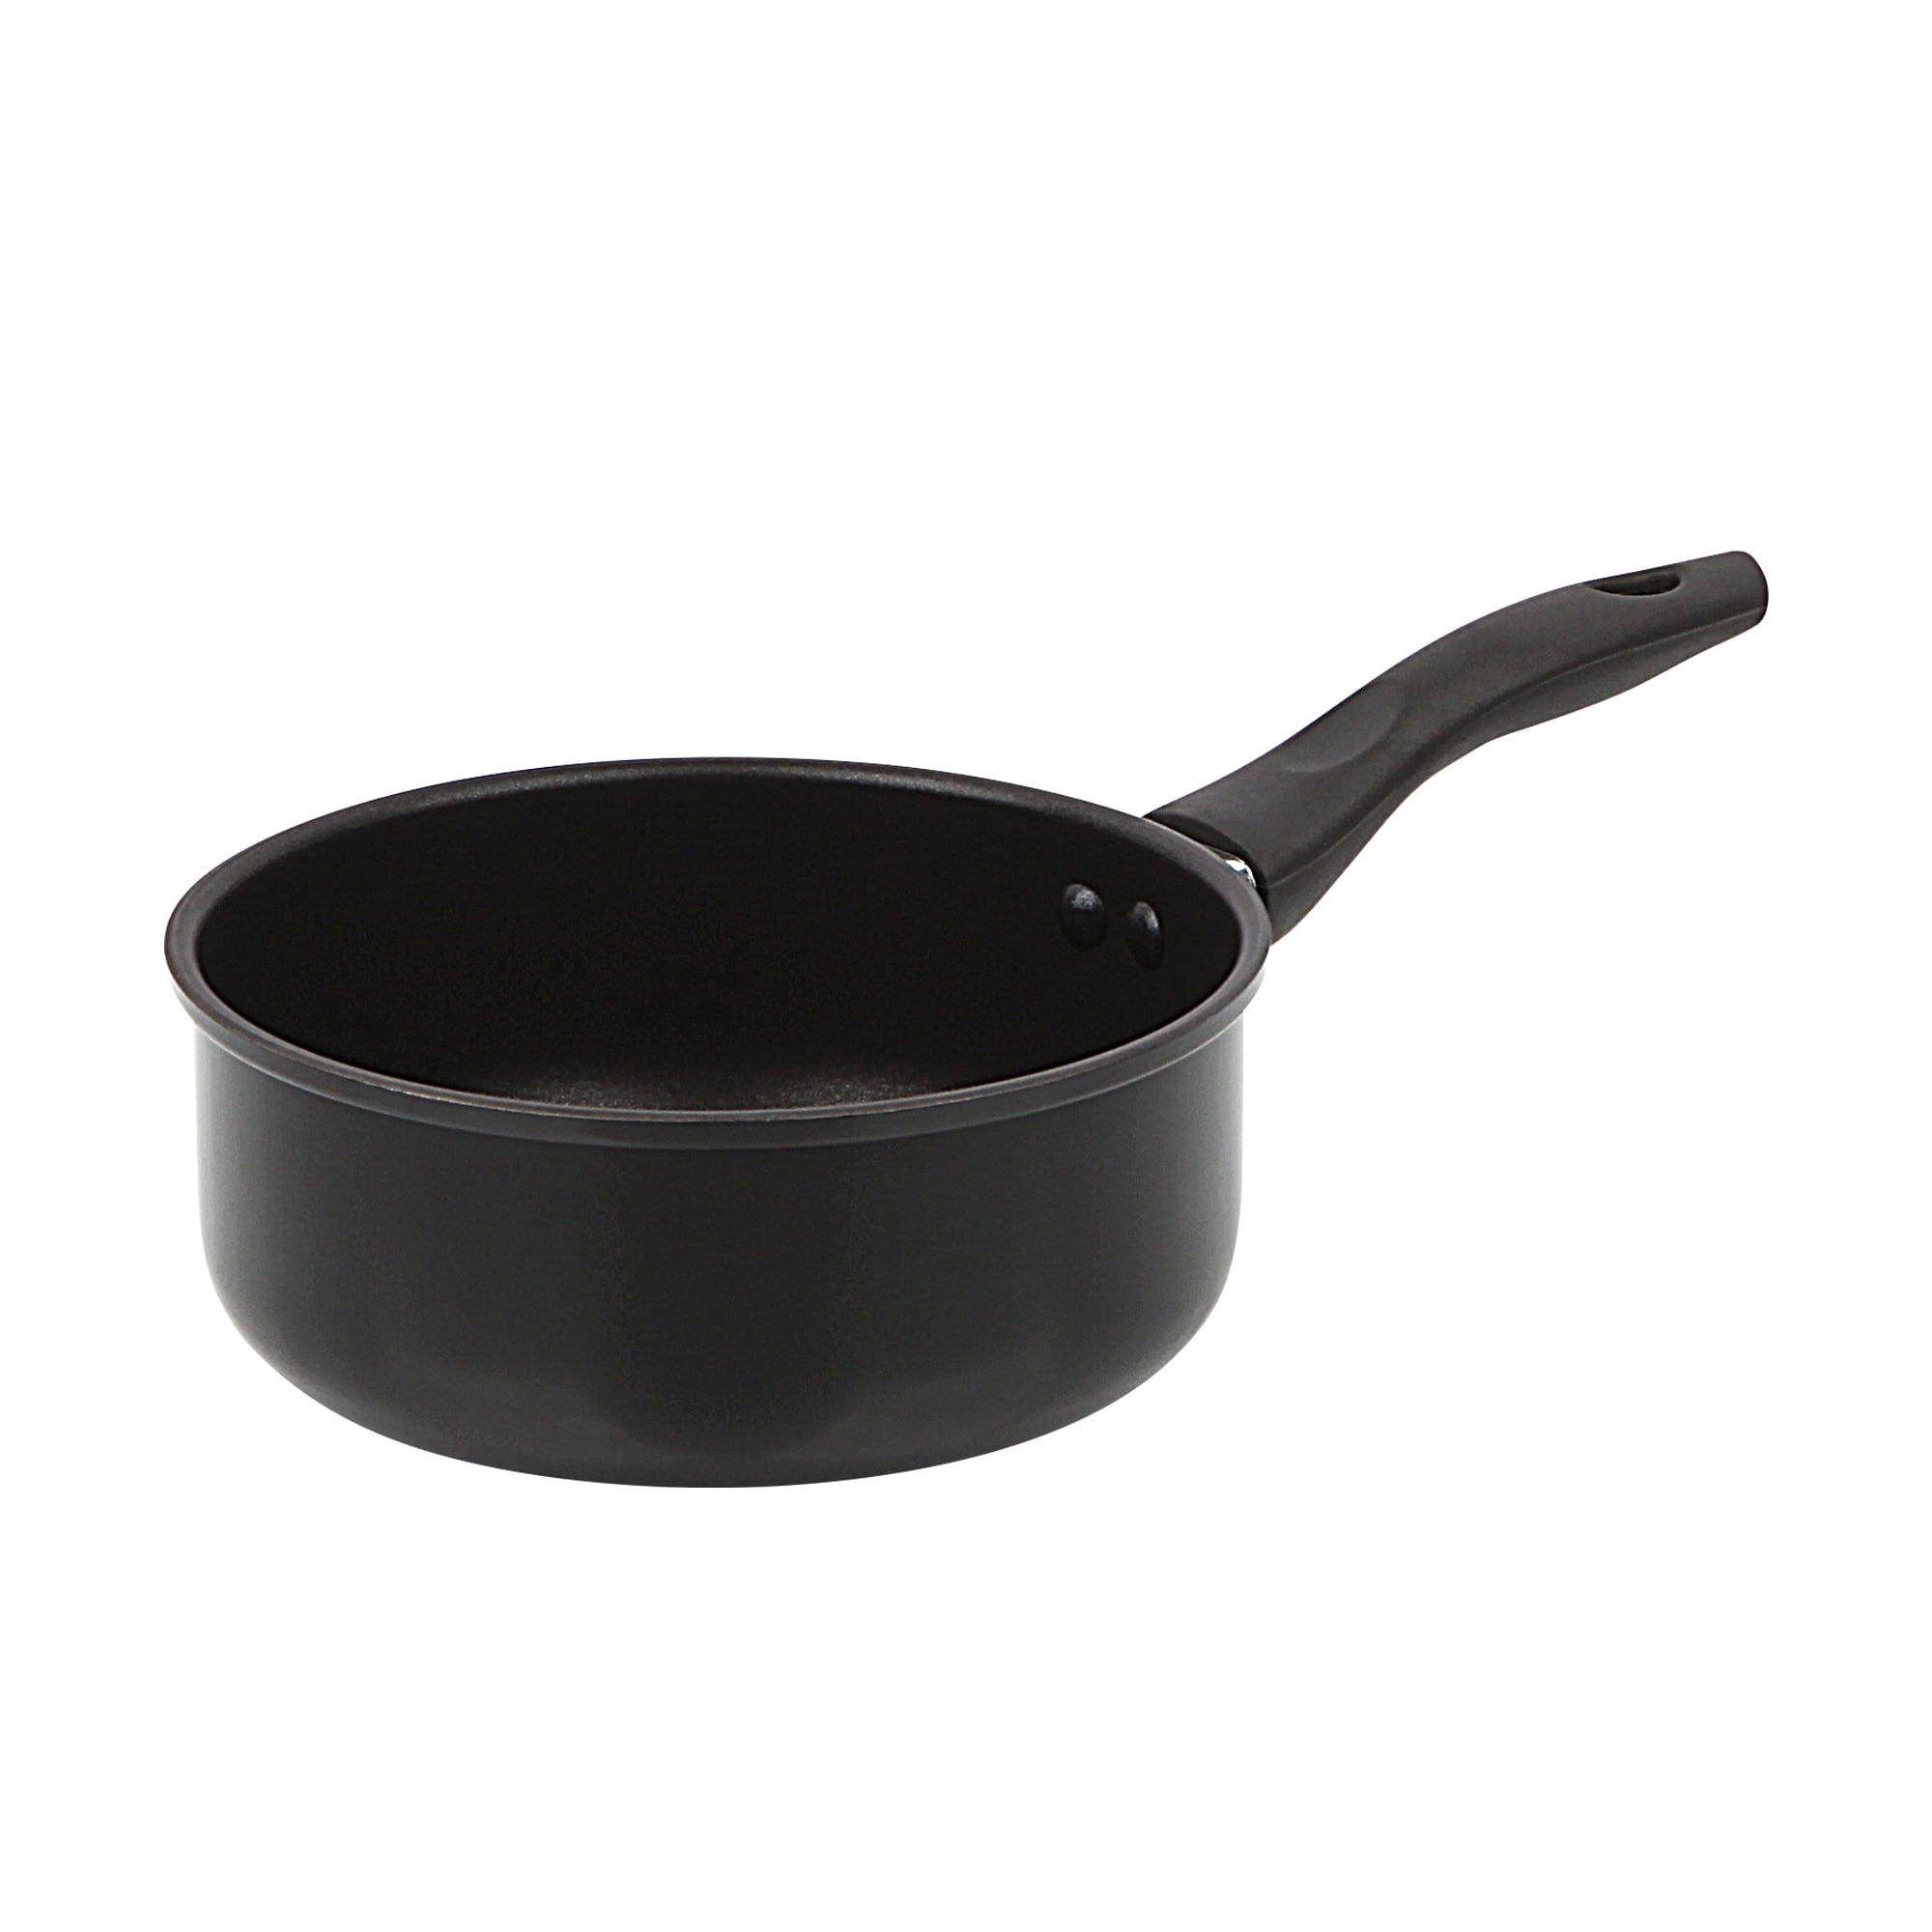 Mainstays 3 Piece Non-Stick Sauce Pans, Black, Set Includes 1Quart & 2Quart  Sauce Pan with Single Lid